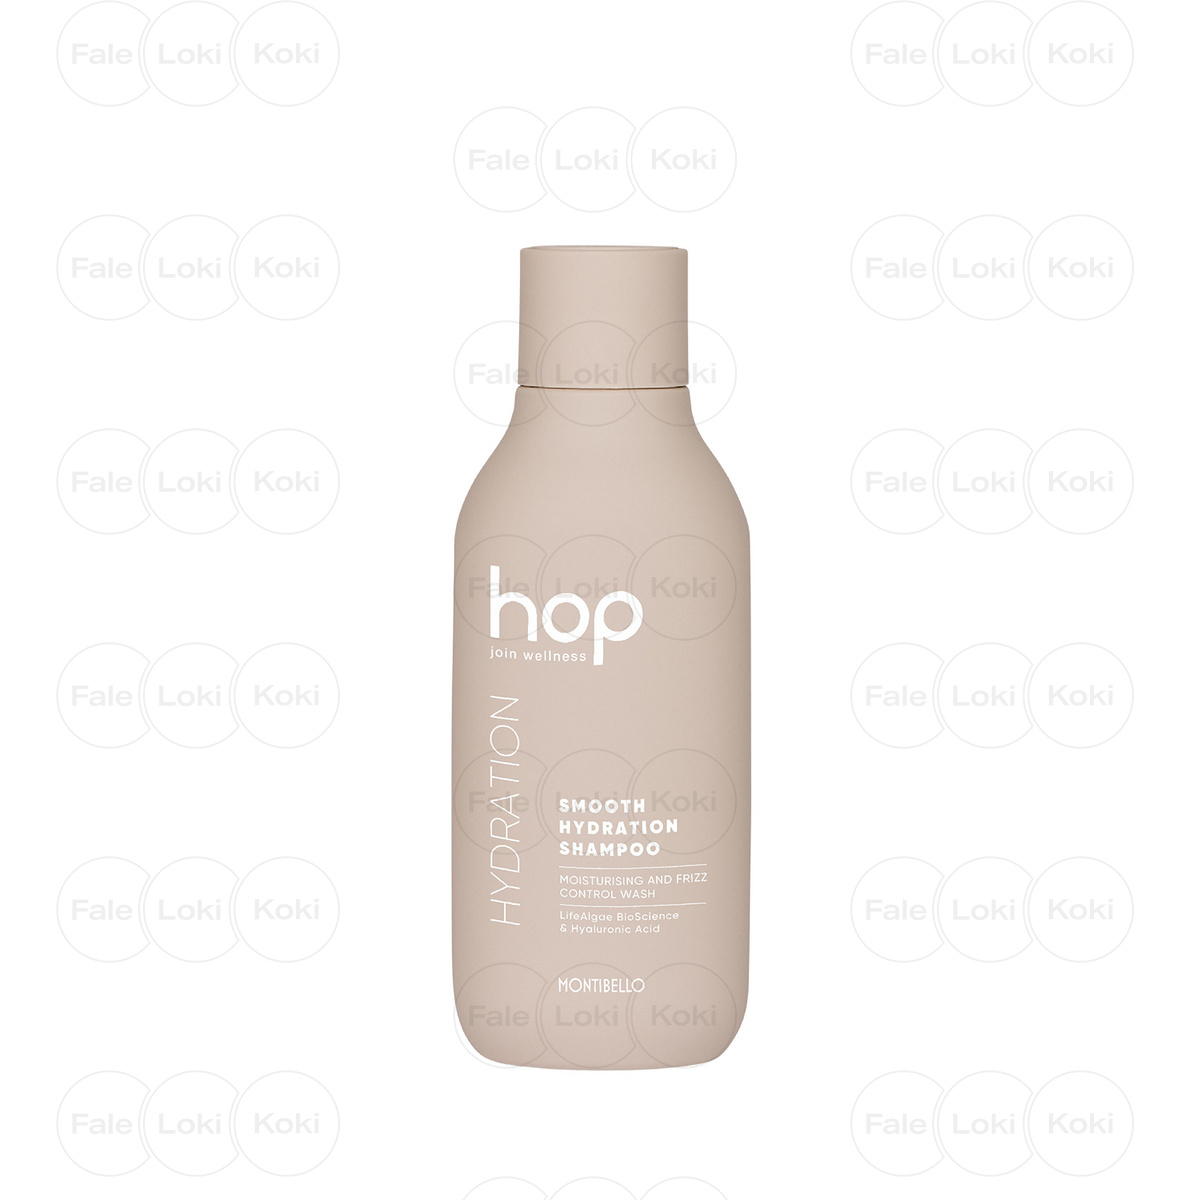 MONTIBELLO HOP szampon do włosów Smooth Hydration Shampoo 300 ml